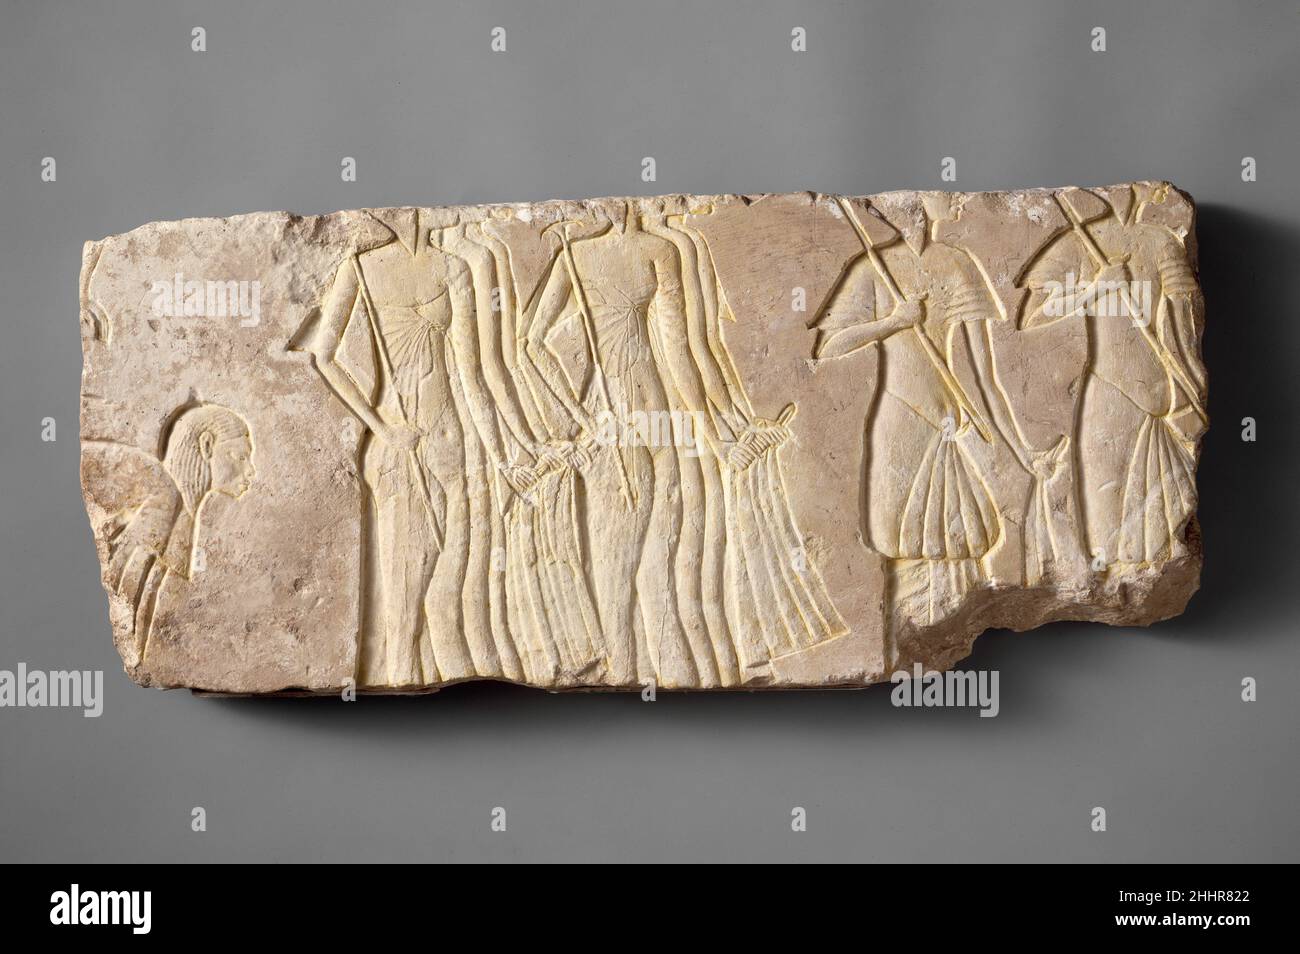 Männliche und weibliche Begleiter ca. 1353–1336 v. Chr. Neues Königreich, Amarna-Periode Eine Gruppe von Dienern für das königliche Paar ist auf diesem Block dargestellt. Zwei Männchen mit Sonnenschirmen folgen zwei Reihen von drei Damen, die mit Straußenfederfächern warten. Alle Höflinge tragen lange Taschentücher, die ihren Status kennzeichnen. Links führt ein sich verbeugend Mann, mit Spuren eines anderen über ihm, wahrscheinlich ein anderes Korps von Assistenten ein.. Männliche und weibliche Begleiter. Ca. 1353–1336 V. CHR. Kalkstein, Farbe. Neues Königreich, Amarna-Zeit. Aus Ägypten; wahrscheinlich aus Mittelägypten, Hermopolis (Ashmunein; Khemenu); wahrscheinlich o Stockfoto